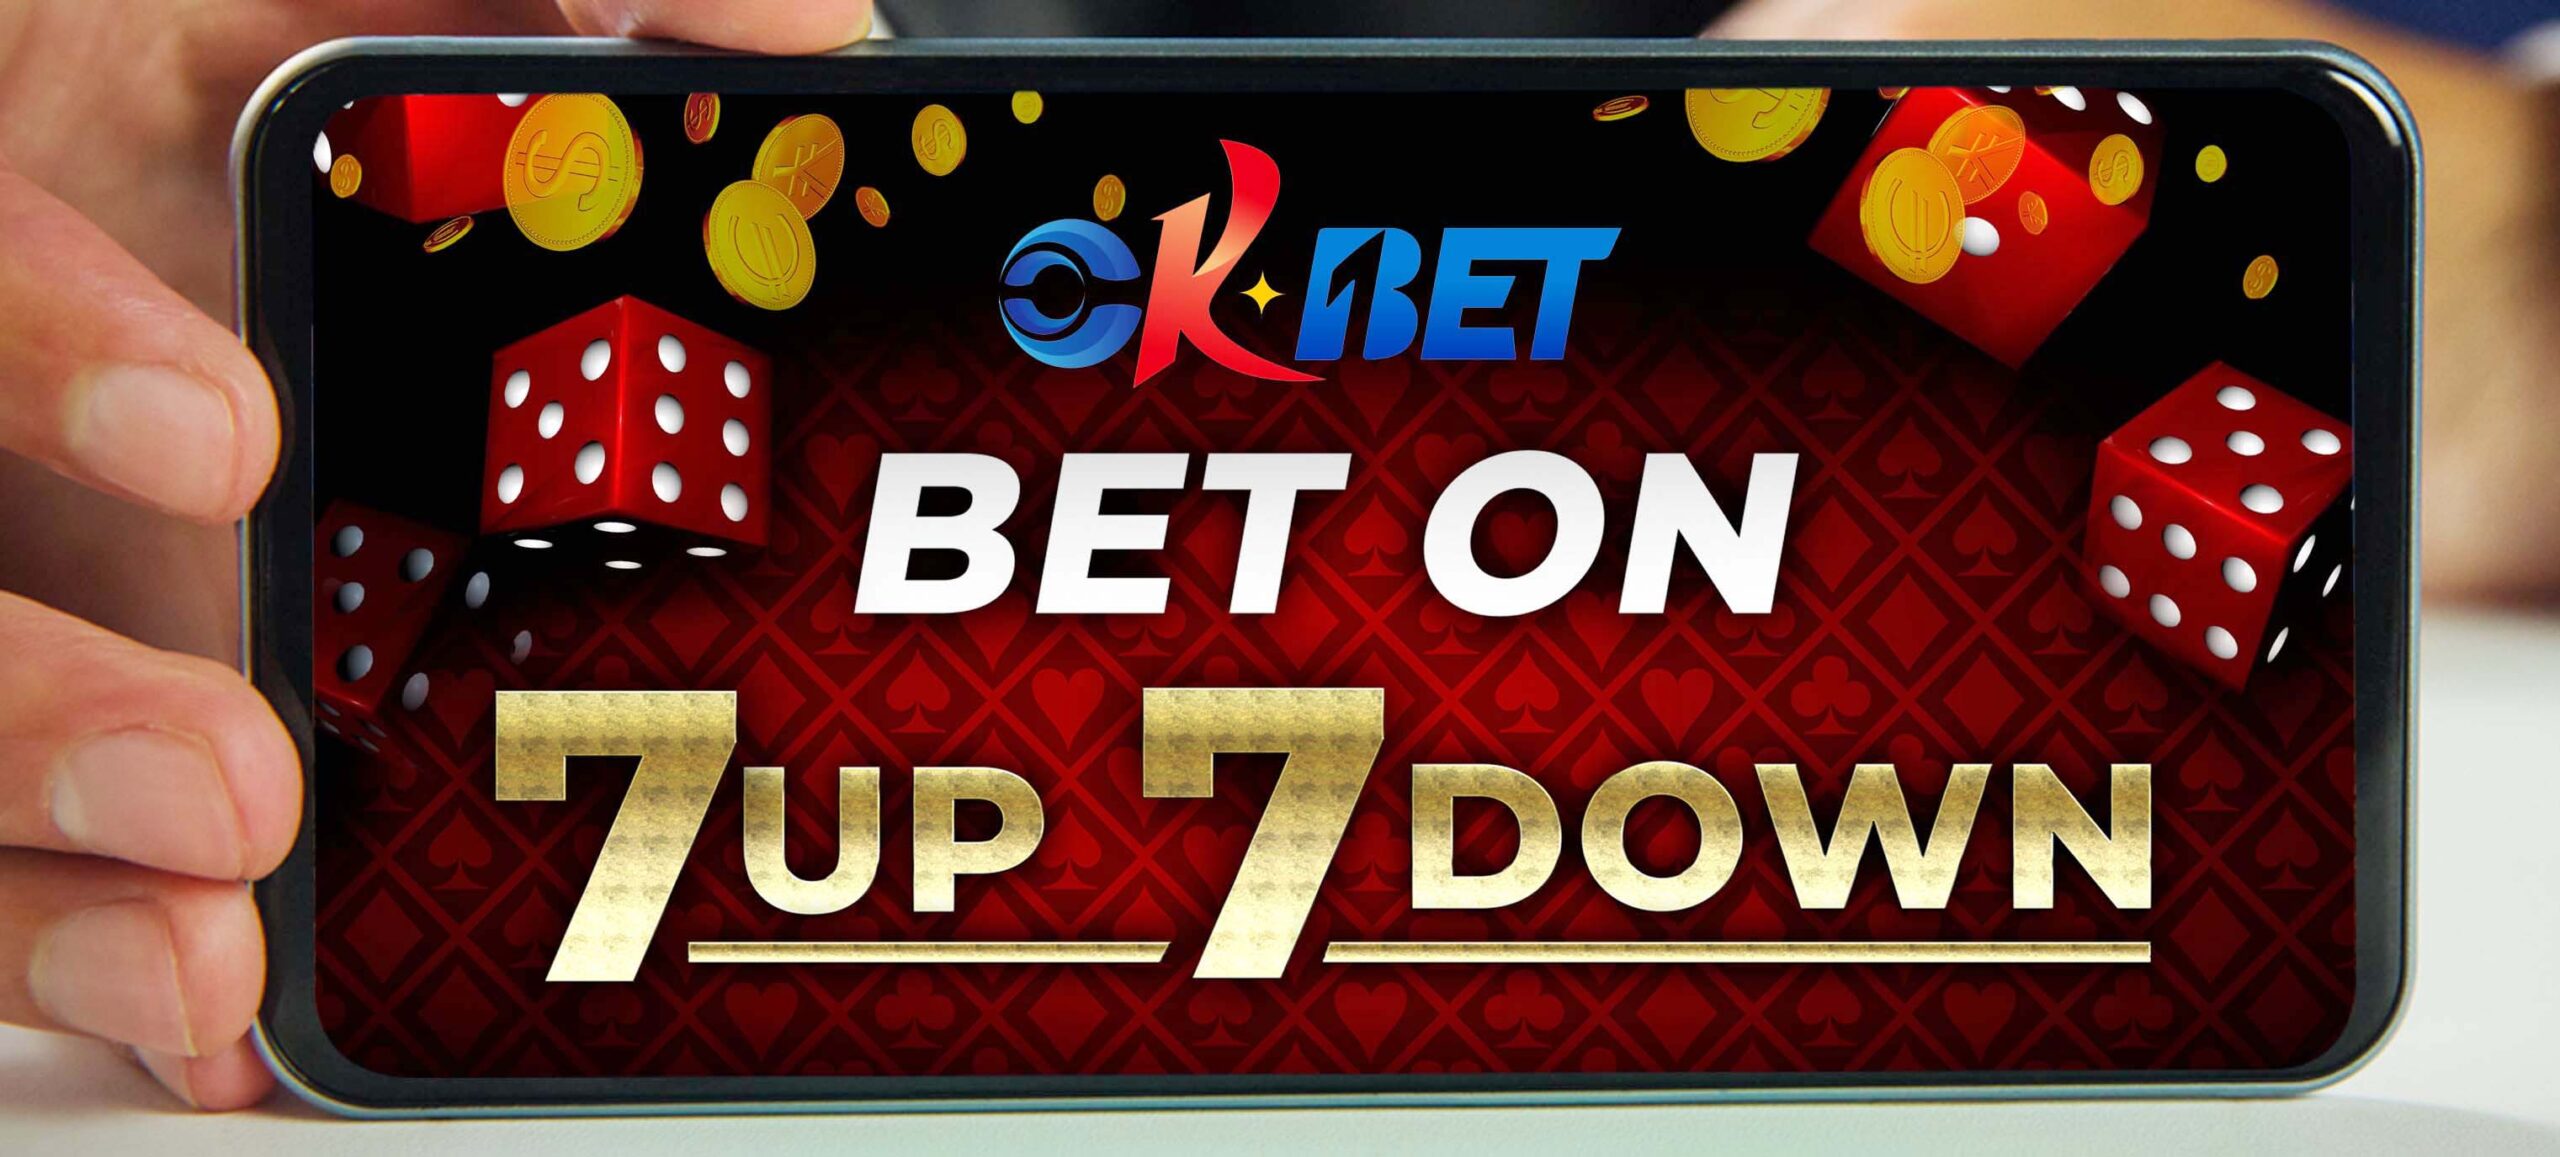 How to Play 7Up 7Down Using OKBET App - OKBET online casino